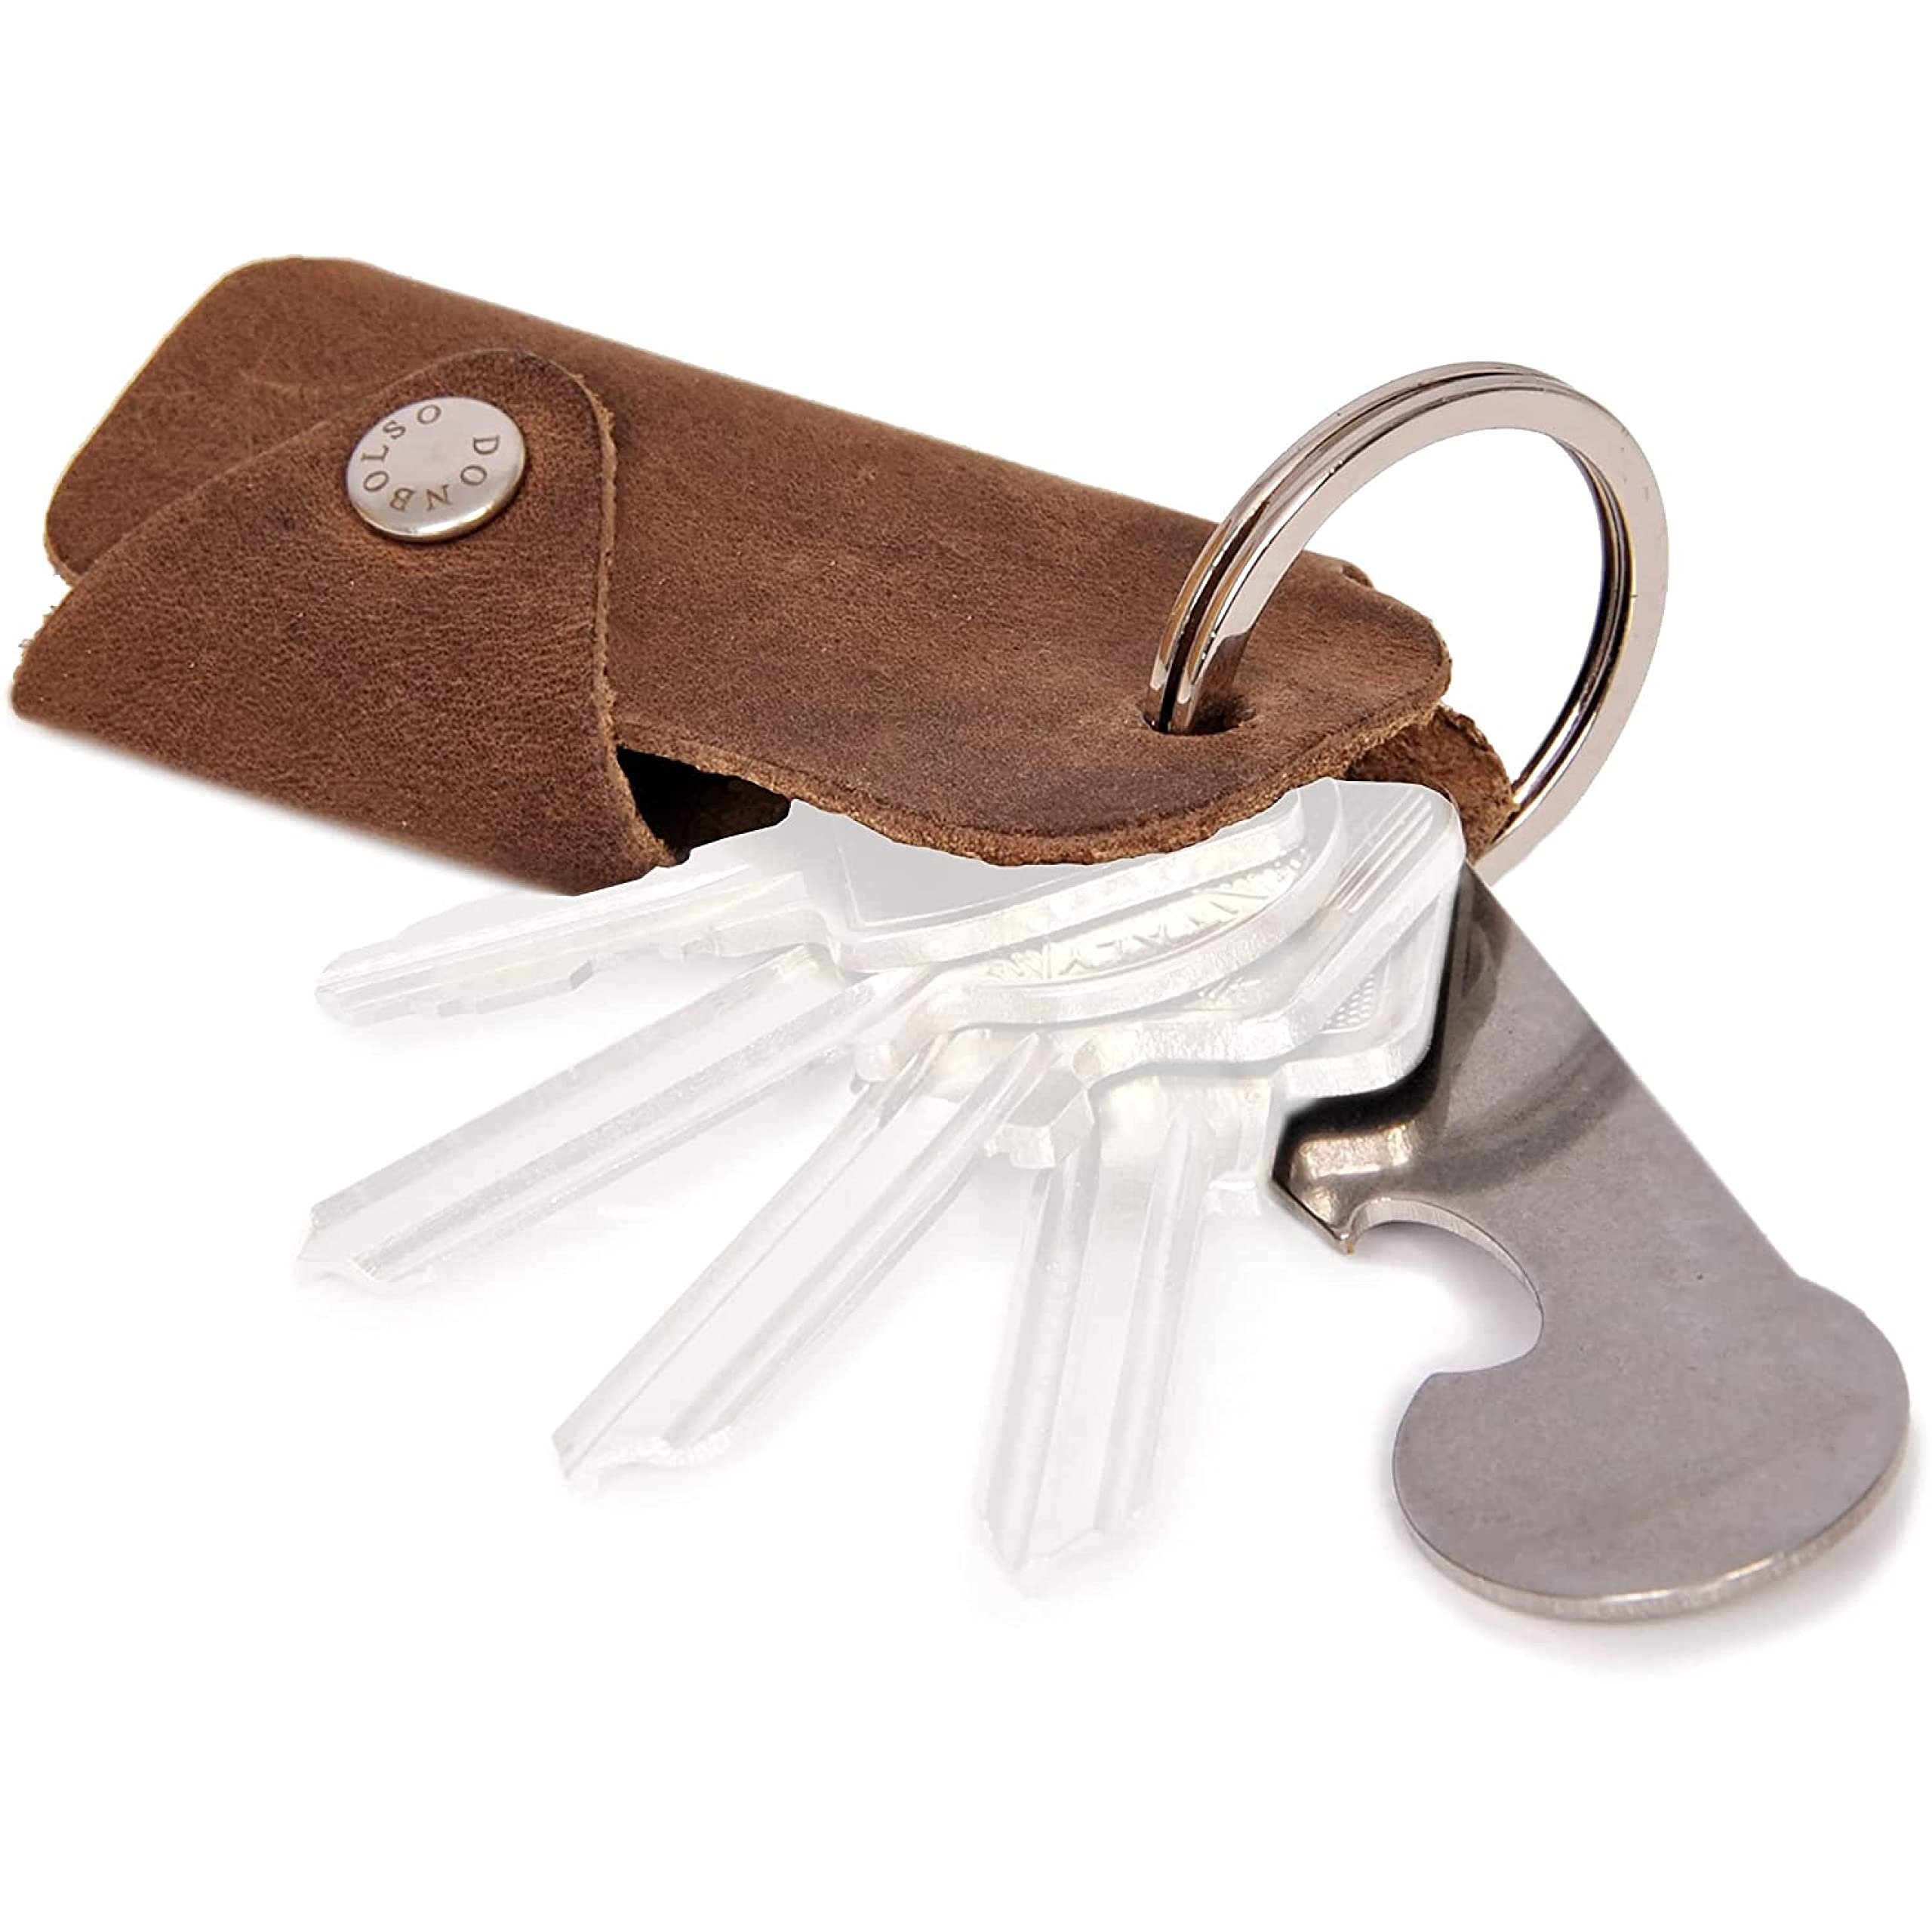 Sschlüsselmäppchen Schlüsseletui Schlüsseltasche Donbolso Vintage Leder Braun Schlüssel, Einkaufswagenlöser Braun, 1-6